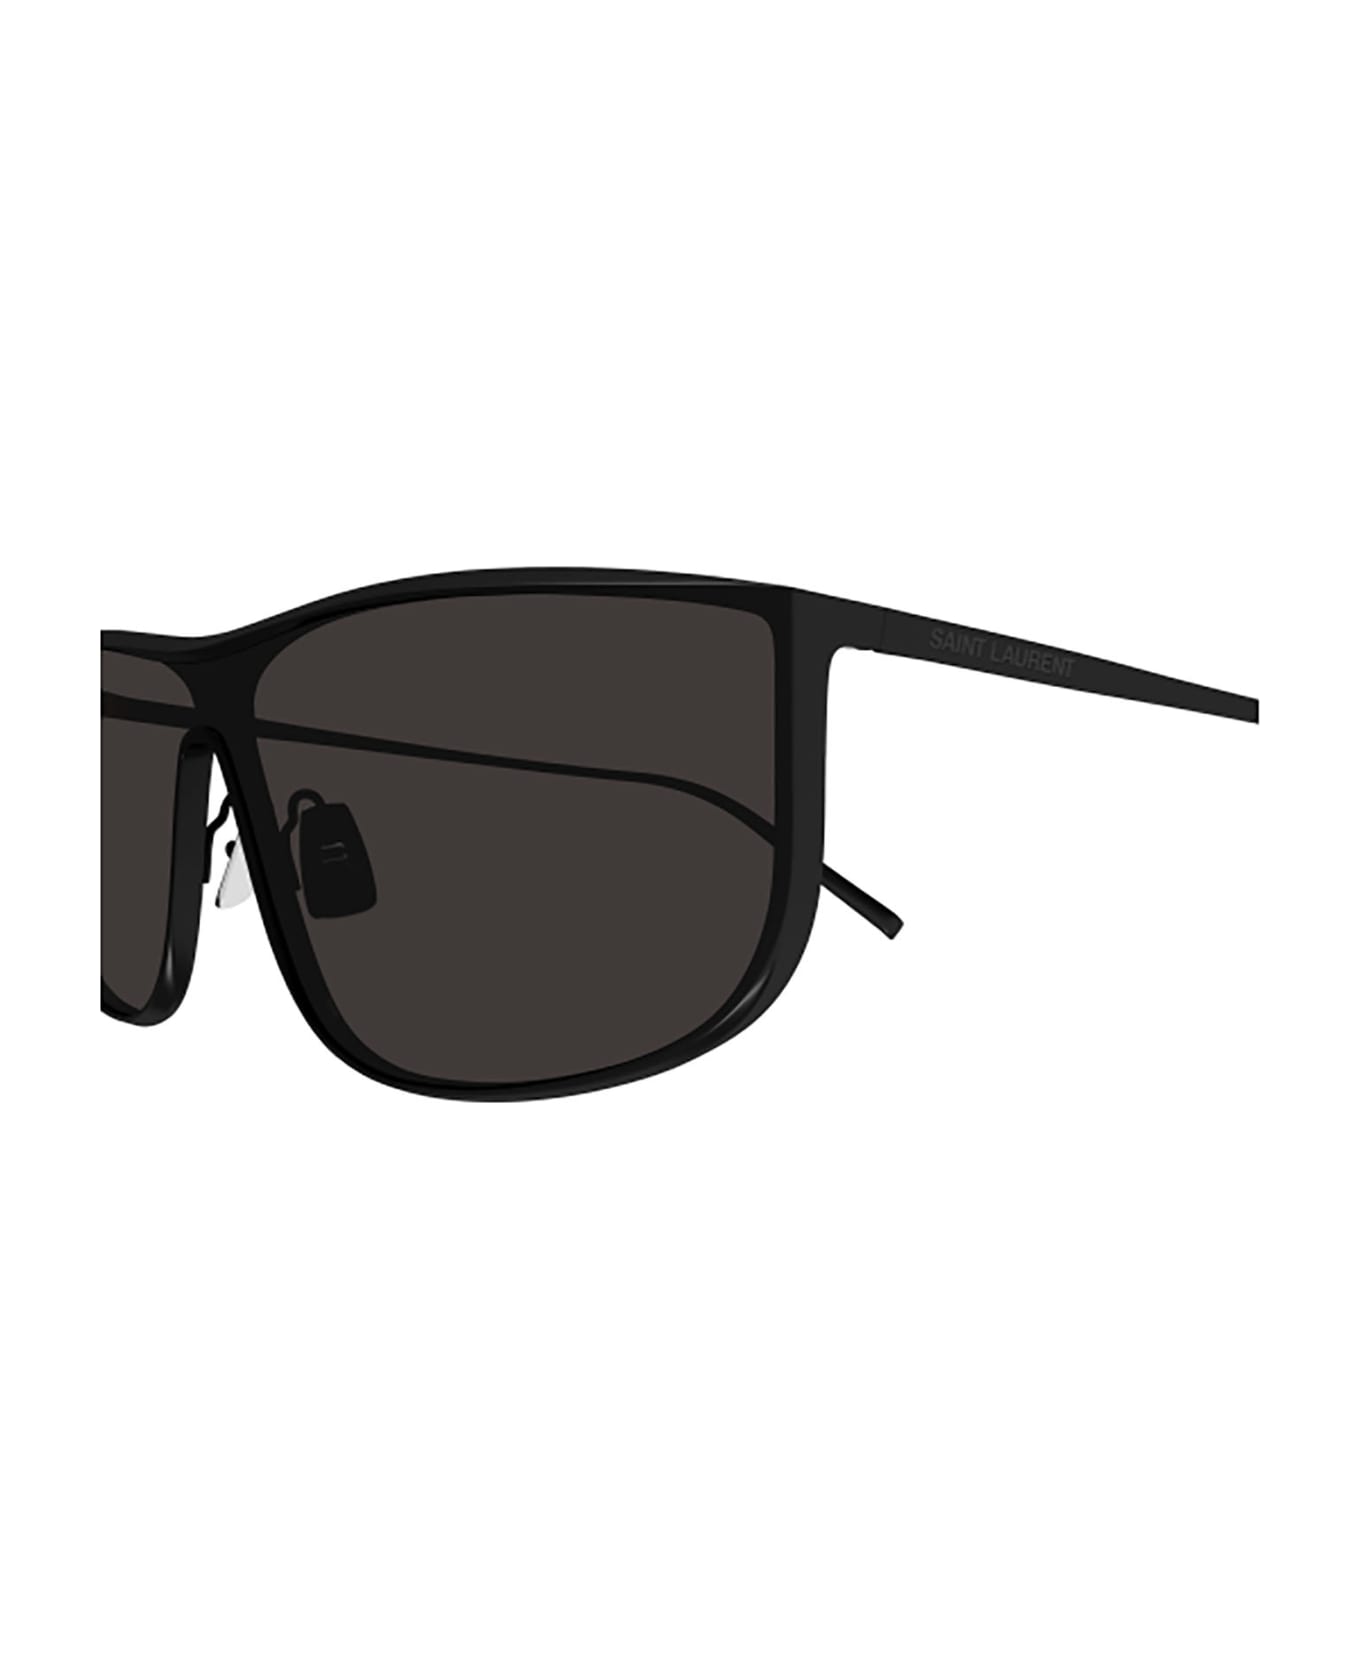 Saint Laurent Eyewear SL 605 LUNA Sunglasses - Black Black Black